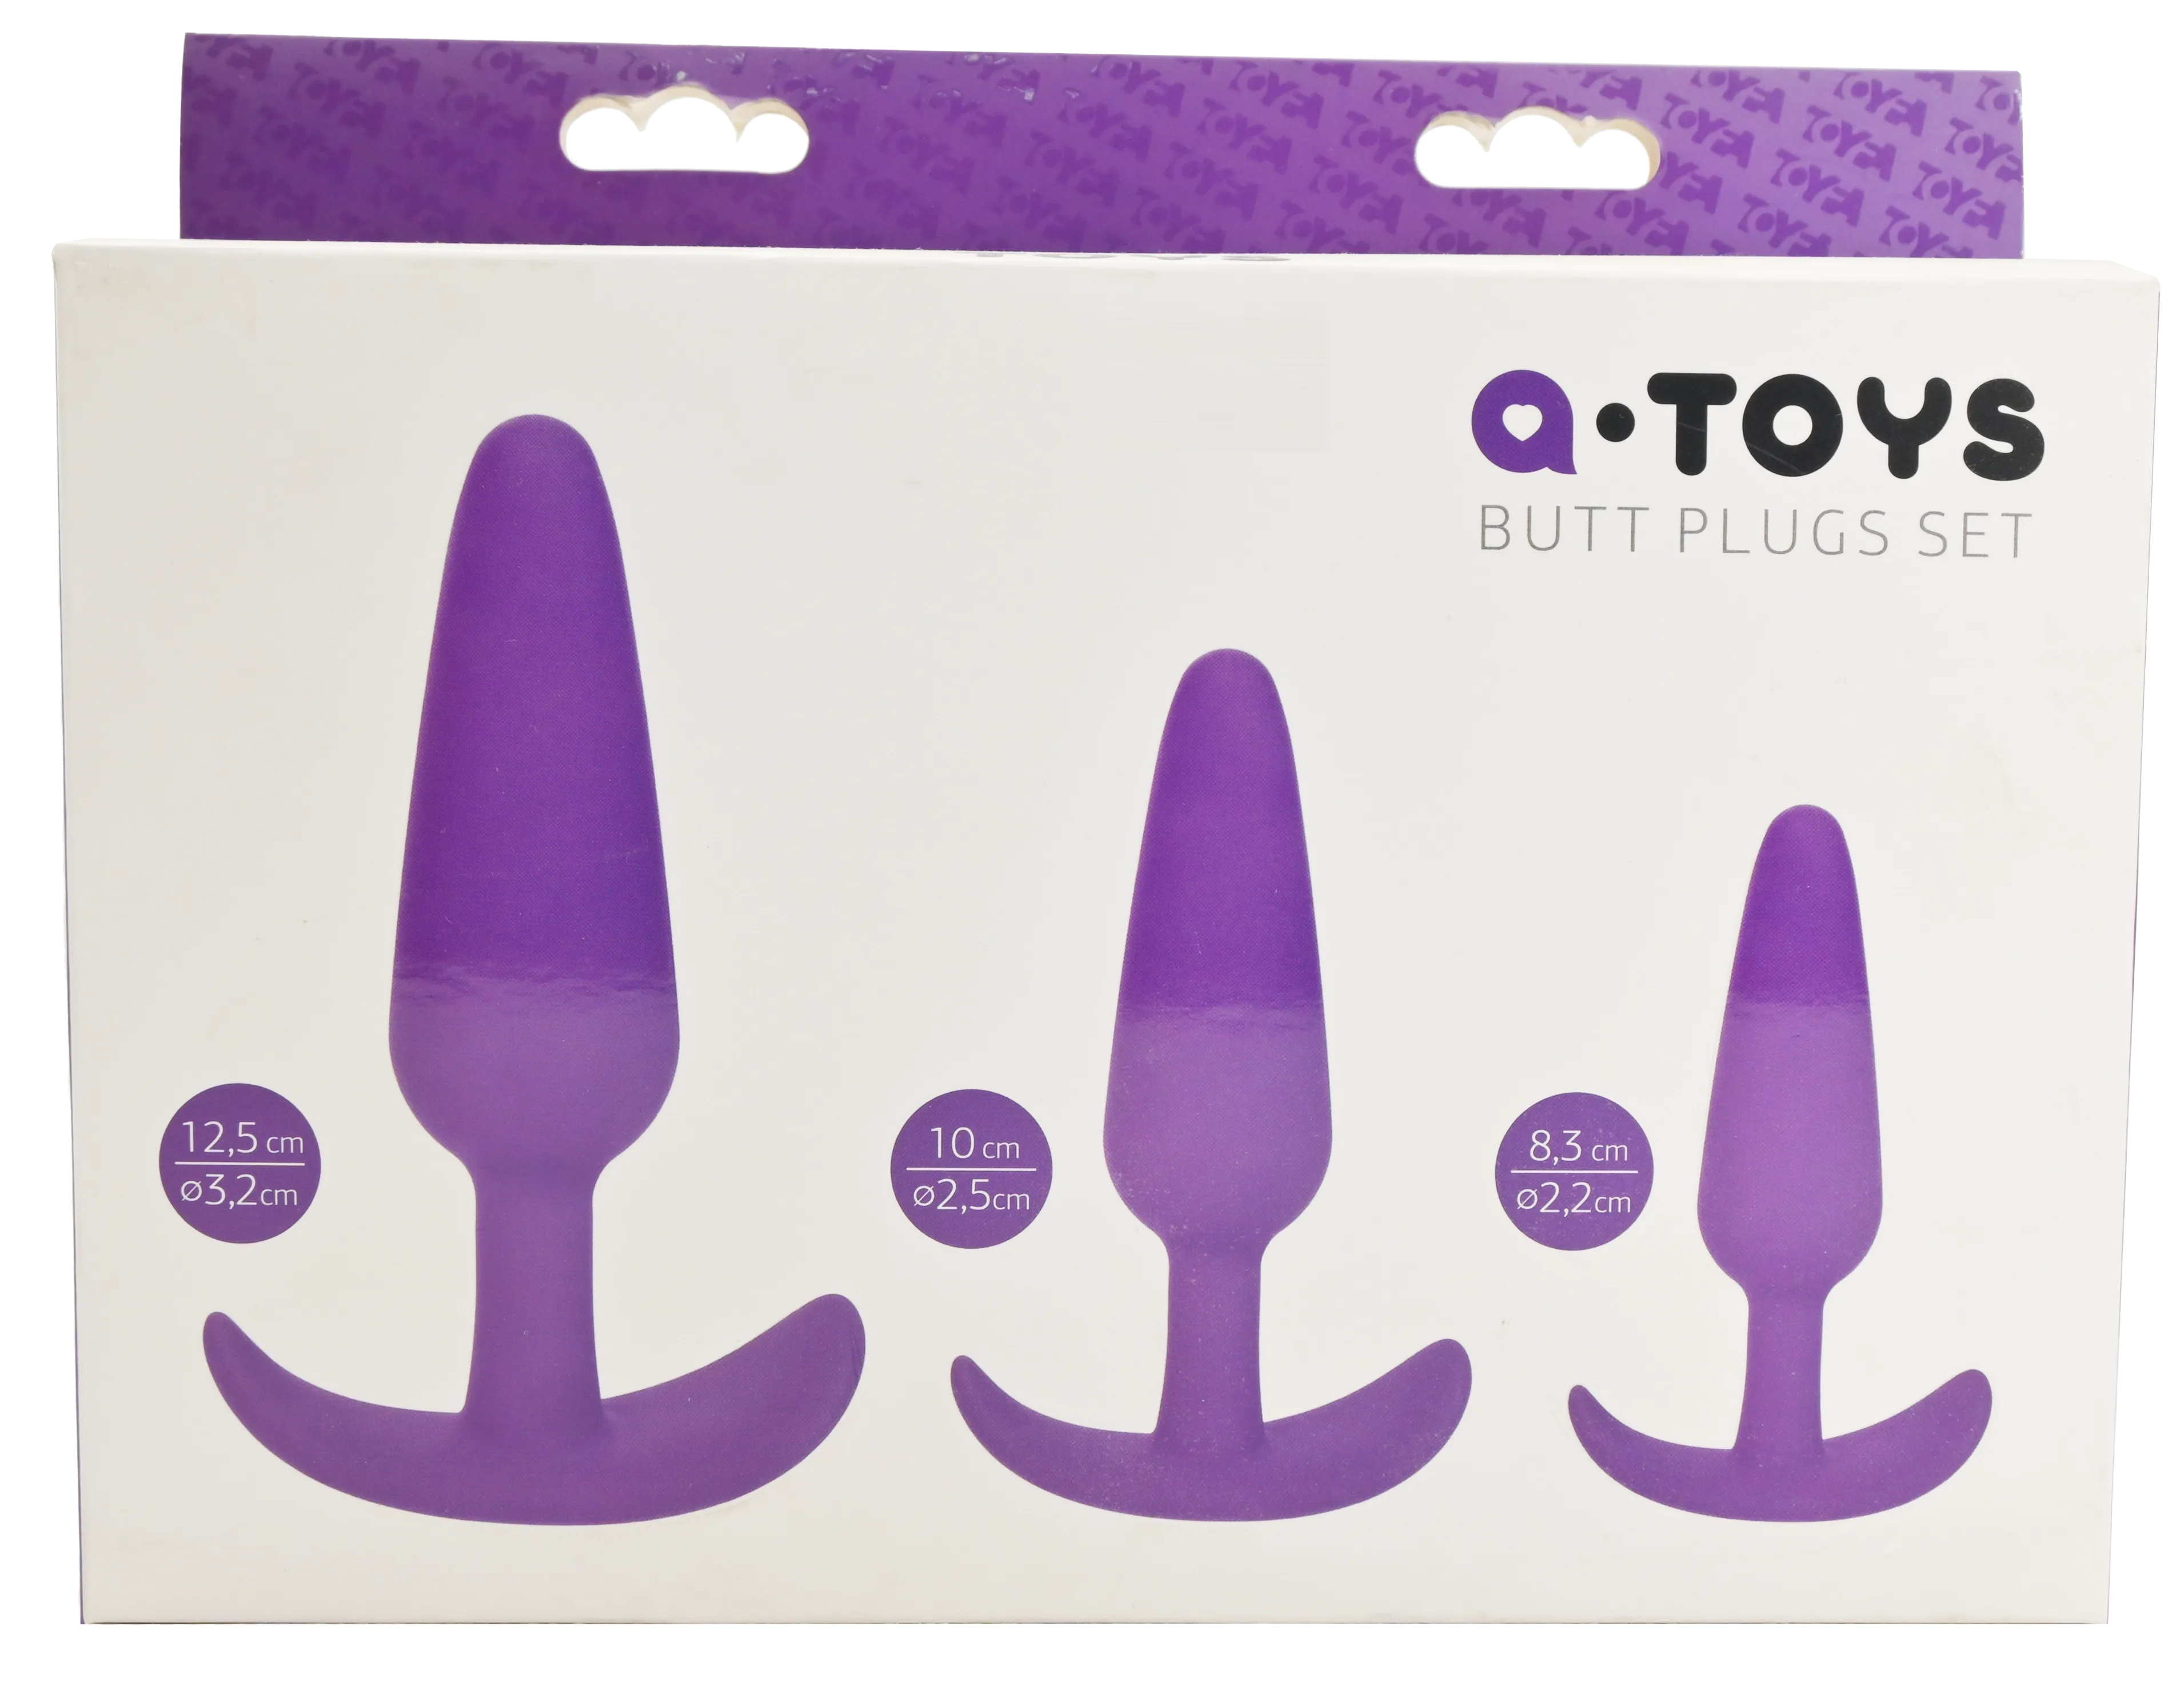 Упаковка a-toys anal plugs set